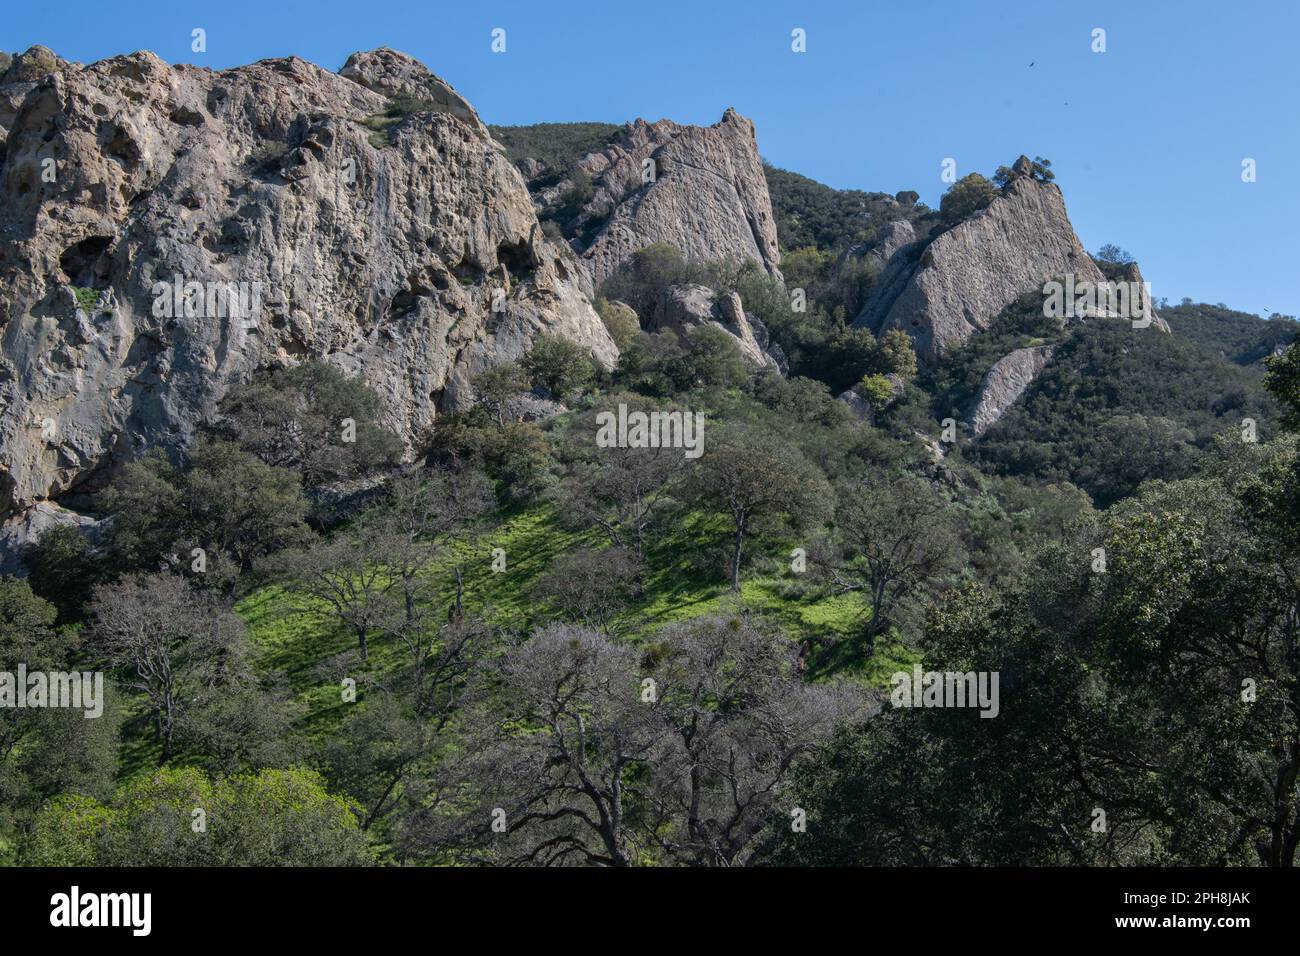 Les formations rocheuses dans la zone de loisirs régionale de la roche du château dans le parc régional de Diablo Foothills en Californie. Banque D'Images